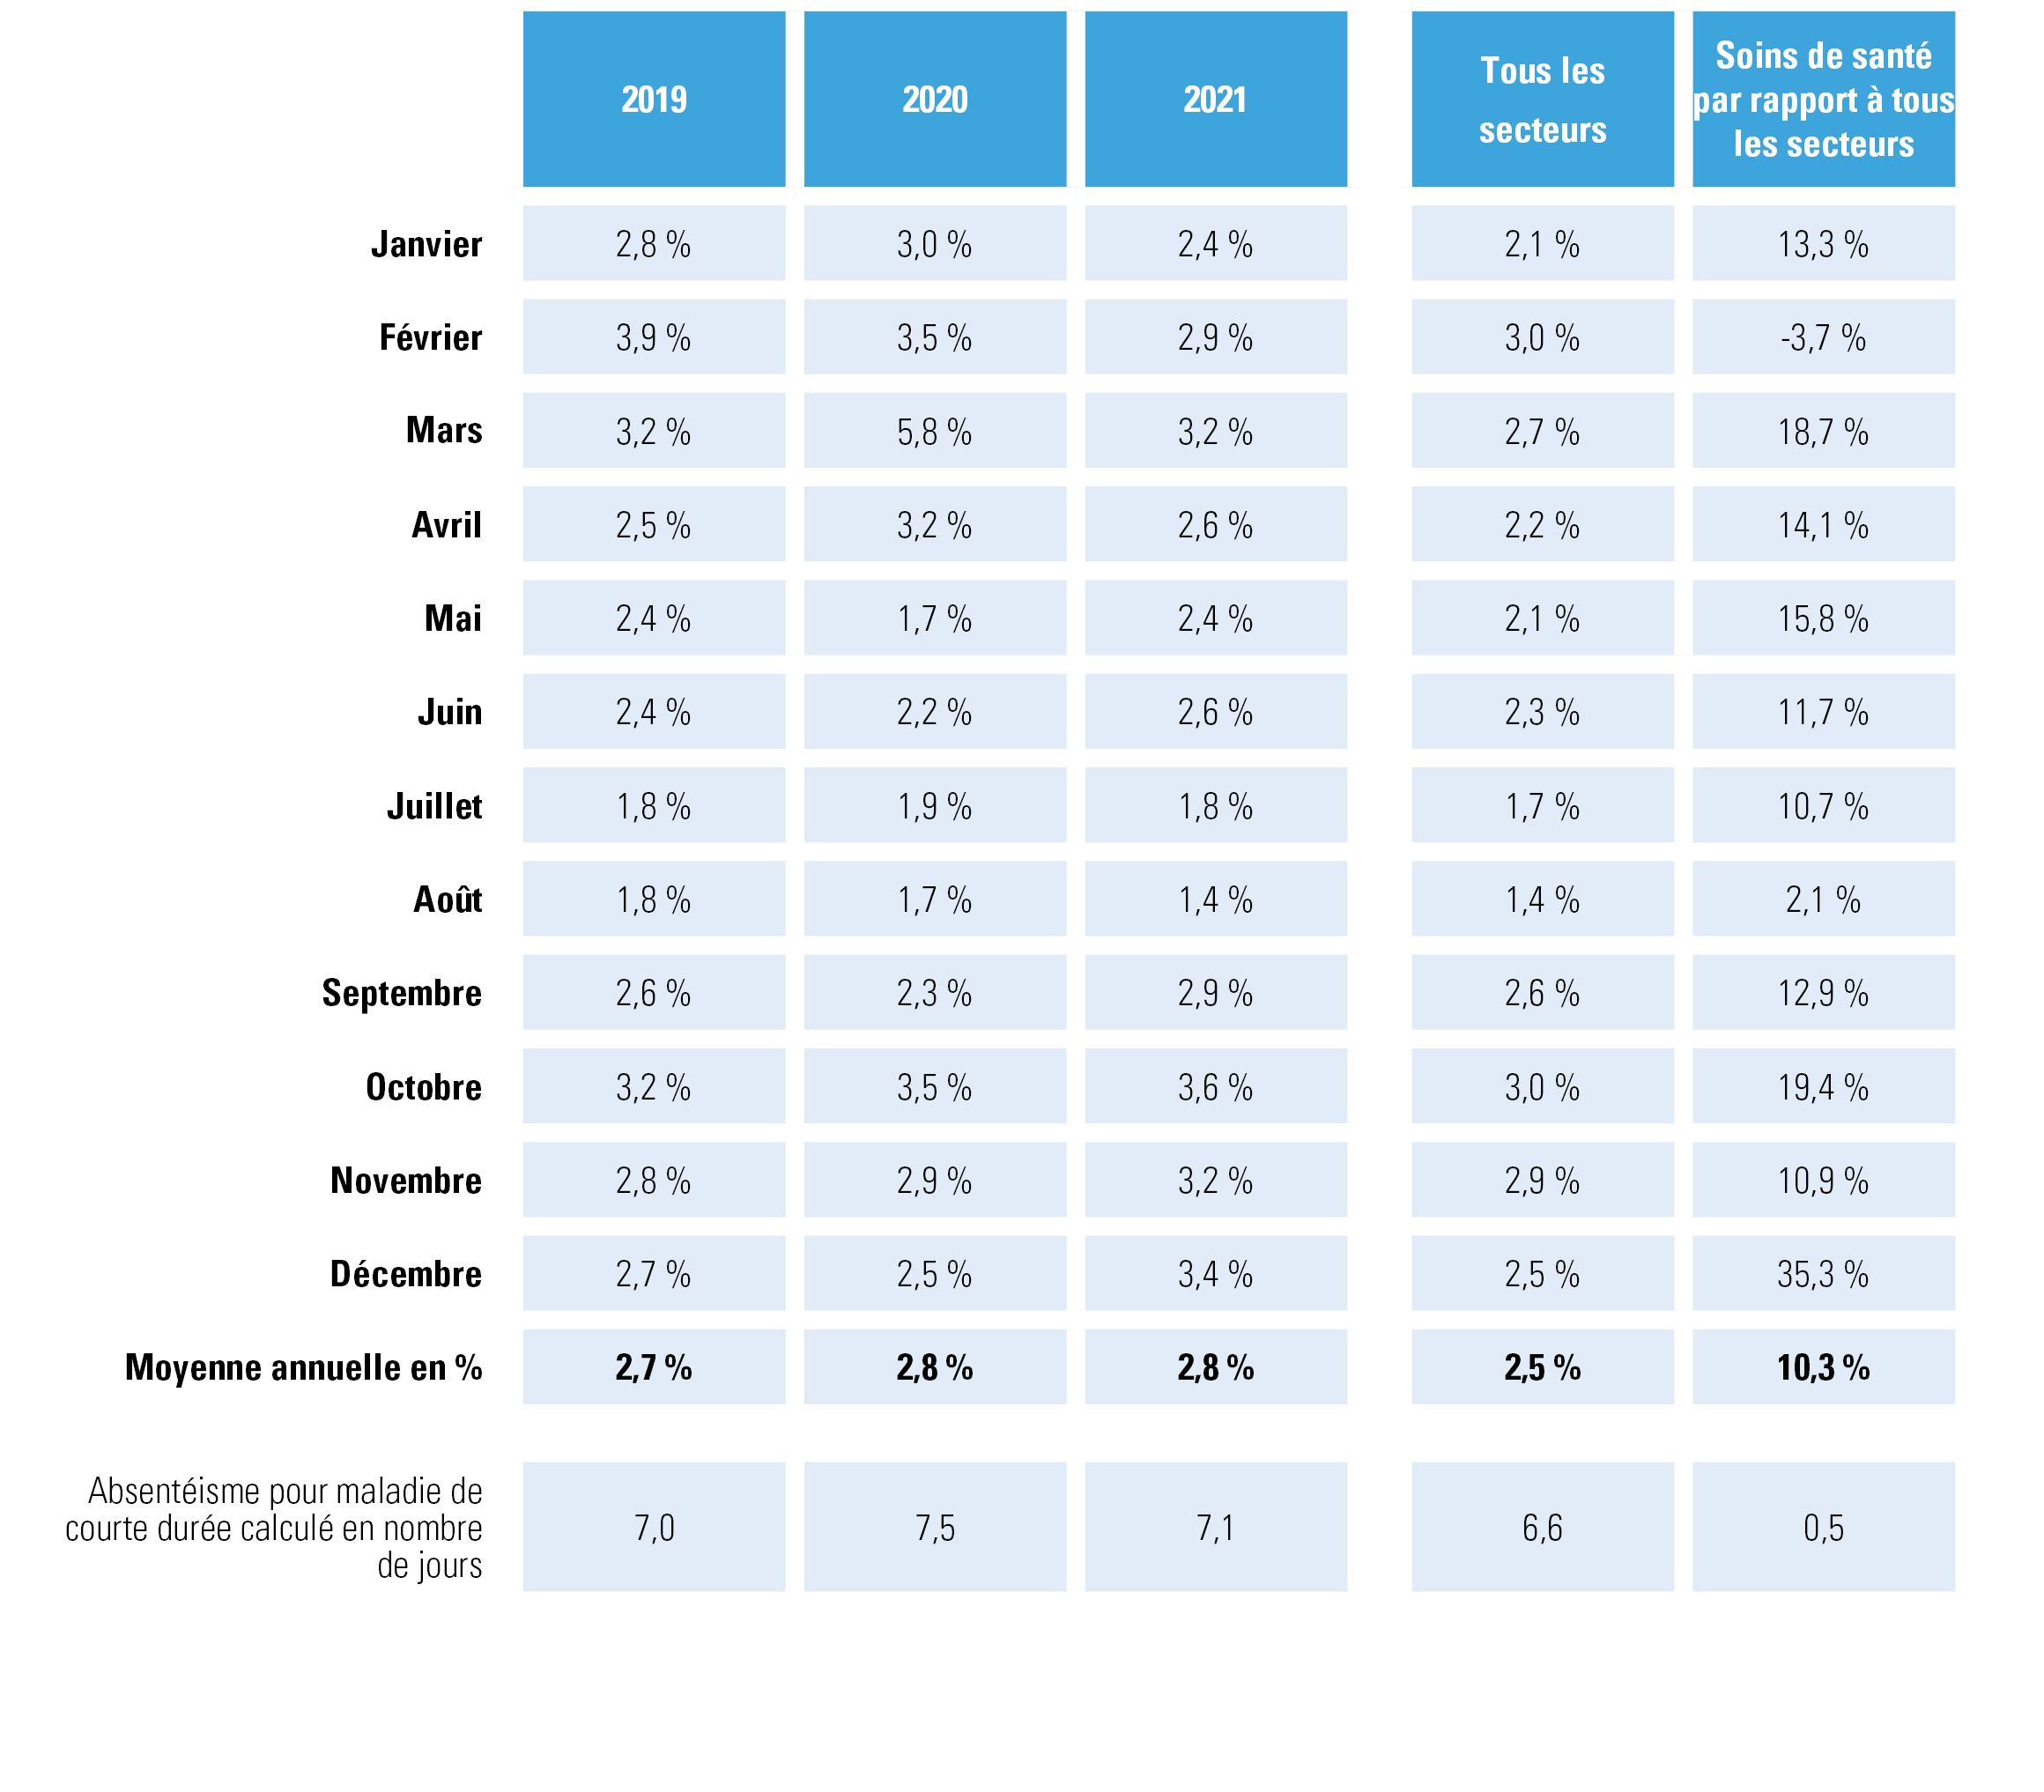 Évolution de l’absentéisme de courte durée dans les SOINS DE SANTÉ, 2019, 2020 et 2021, mensuel